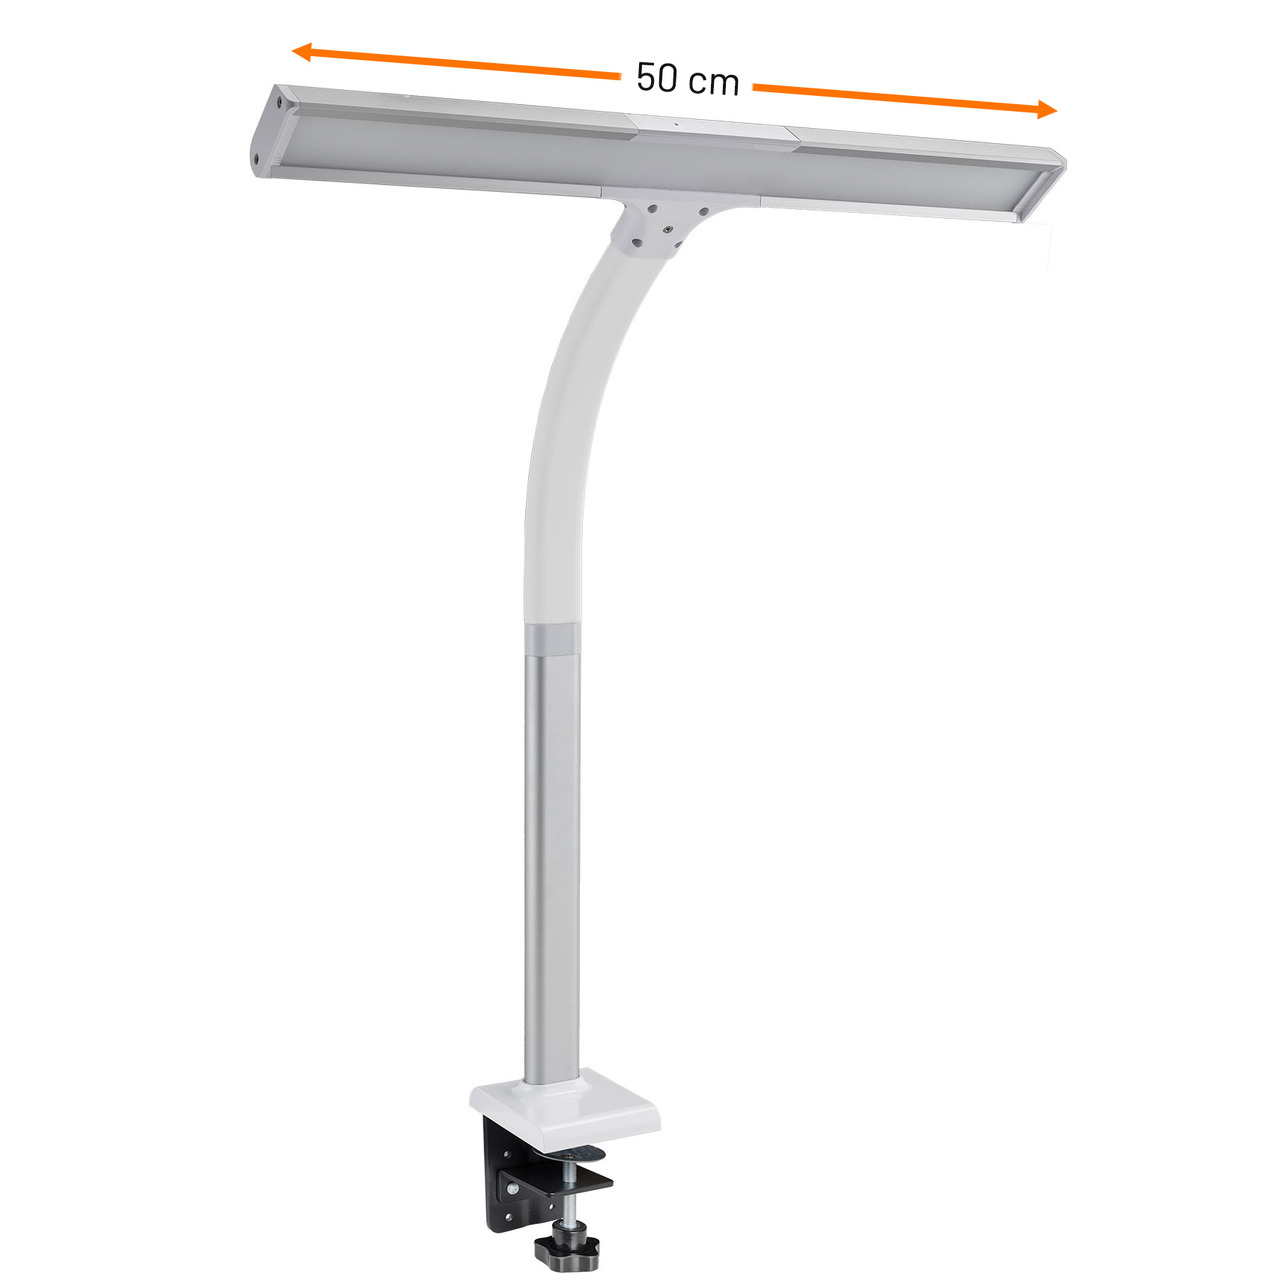 FeinTech 10-W-LED-Schreibtischleuchte - LED-Klemmleuchte LTL00310- Tischmontage- 50 cm- weiss-silber unter Beleuchtung